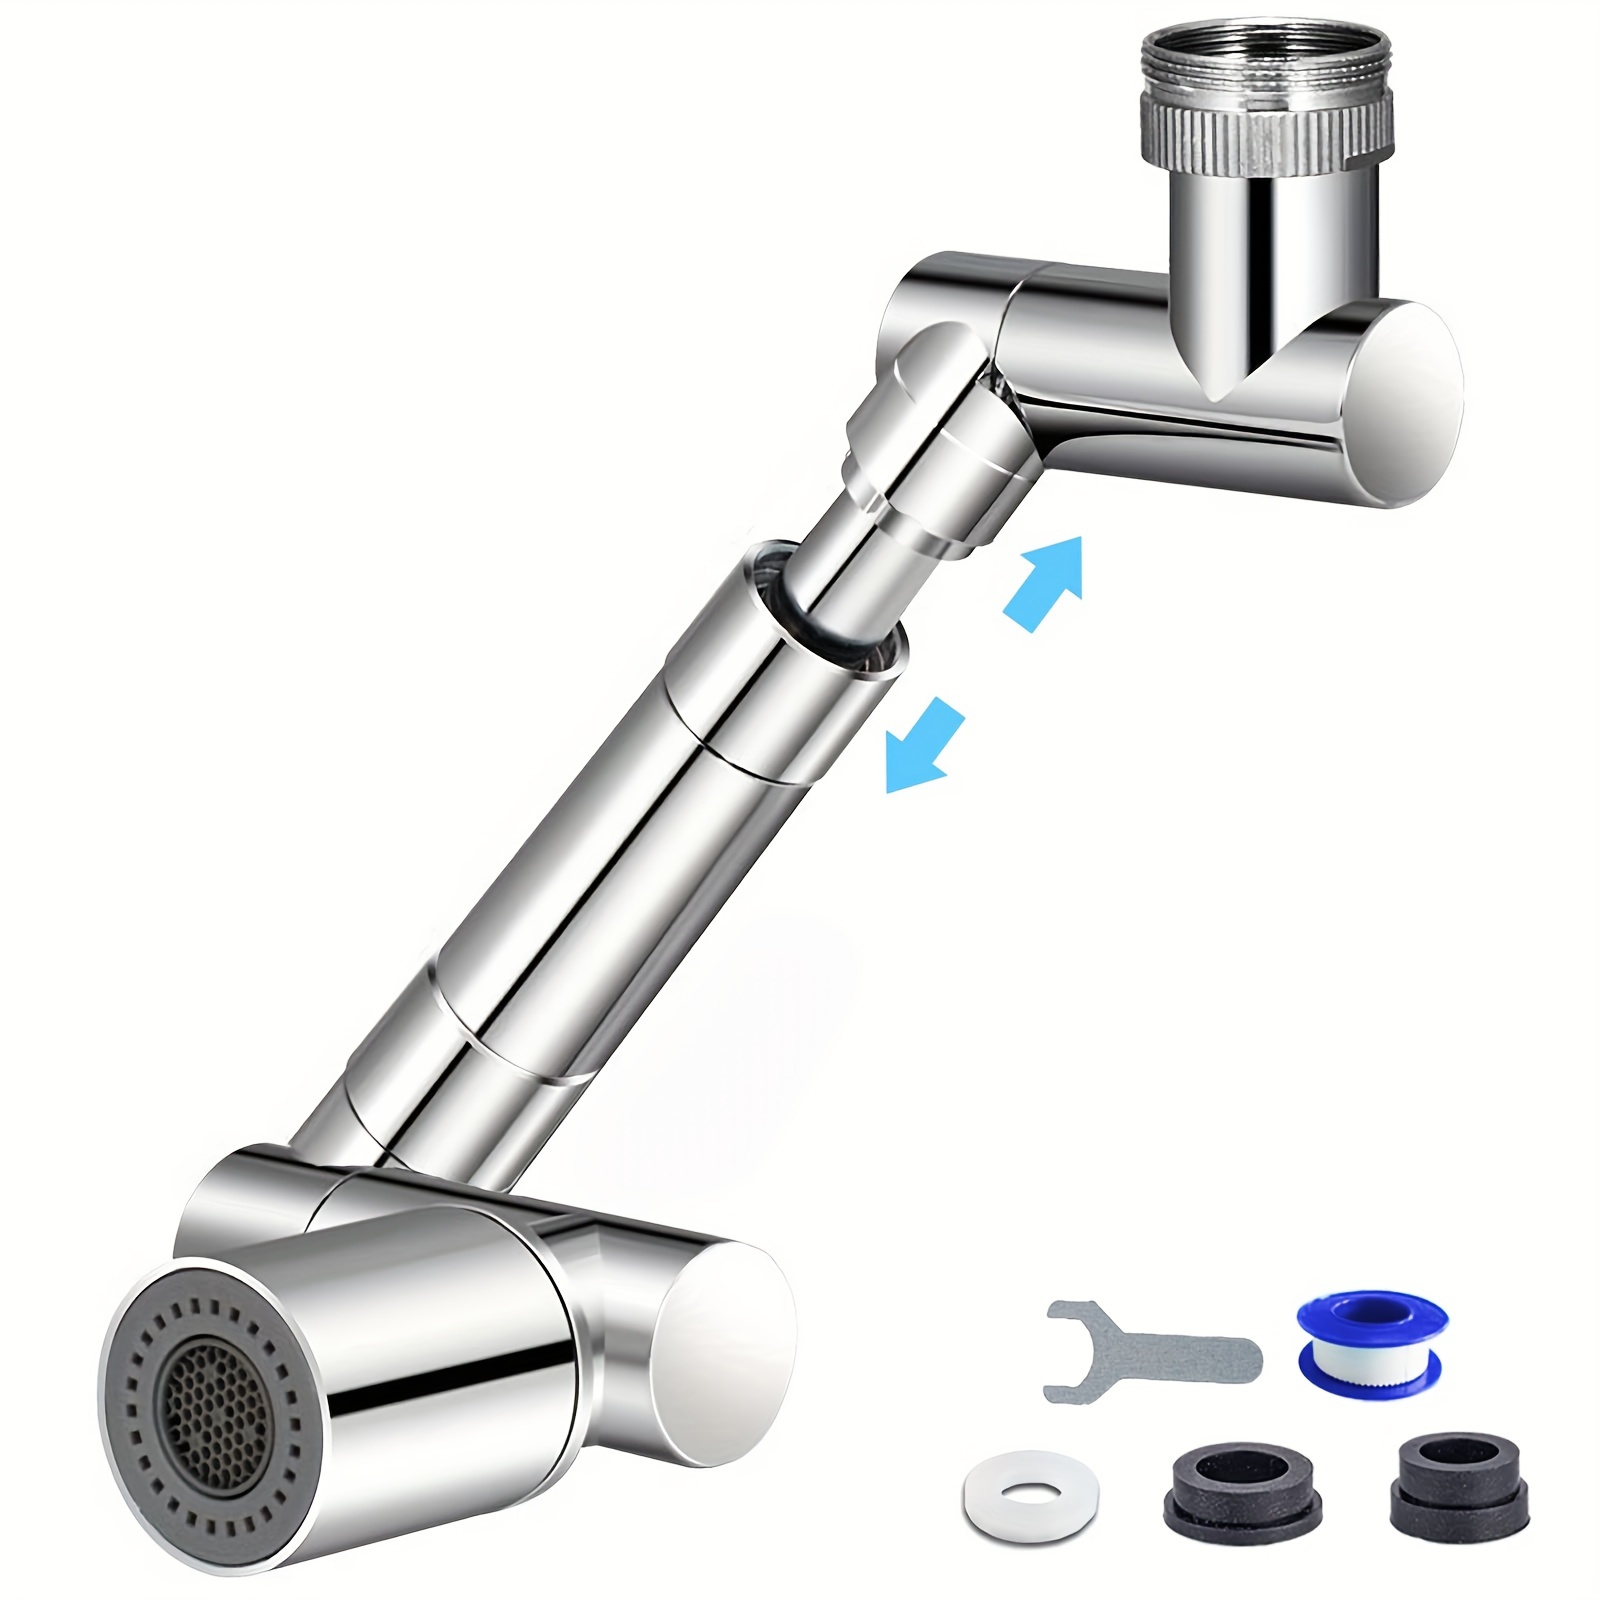 1440 Prolongateur de robinet rotatif universel, 1080 + 360 Aérateur de  robinet grand angle avec 2 modes de sortie d'eau